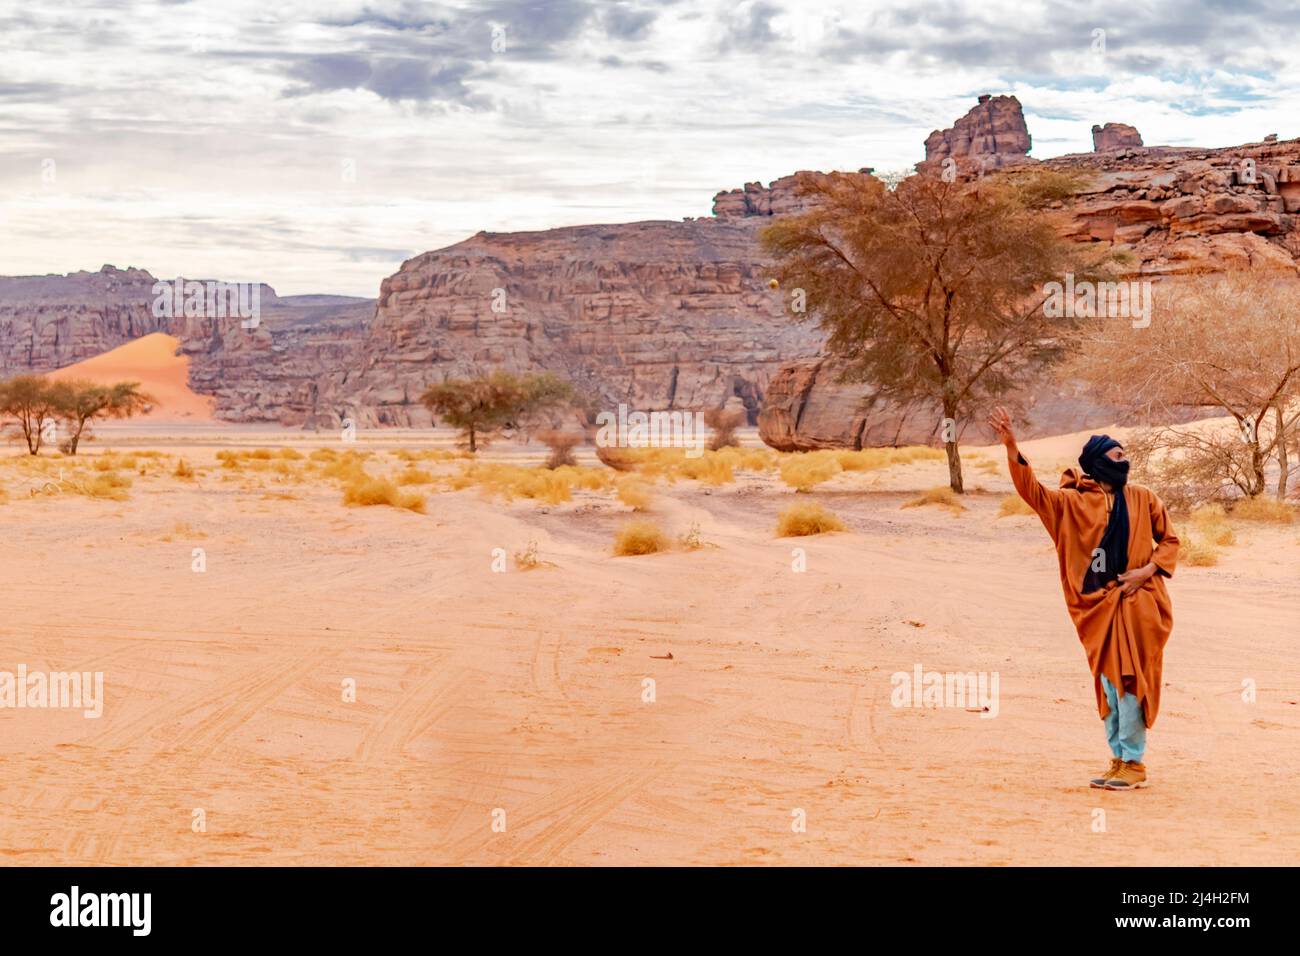 Tadraart Rouge, tuareg homme lève le bras. Acacia, sable dégradé de couleur, herbes sèches, pierres de sable jaune, montagne rocheuse et ciel couvert gris nuageux Banque D'Images